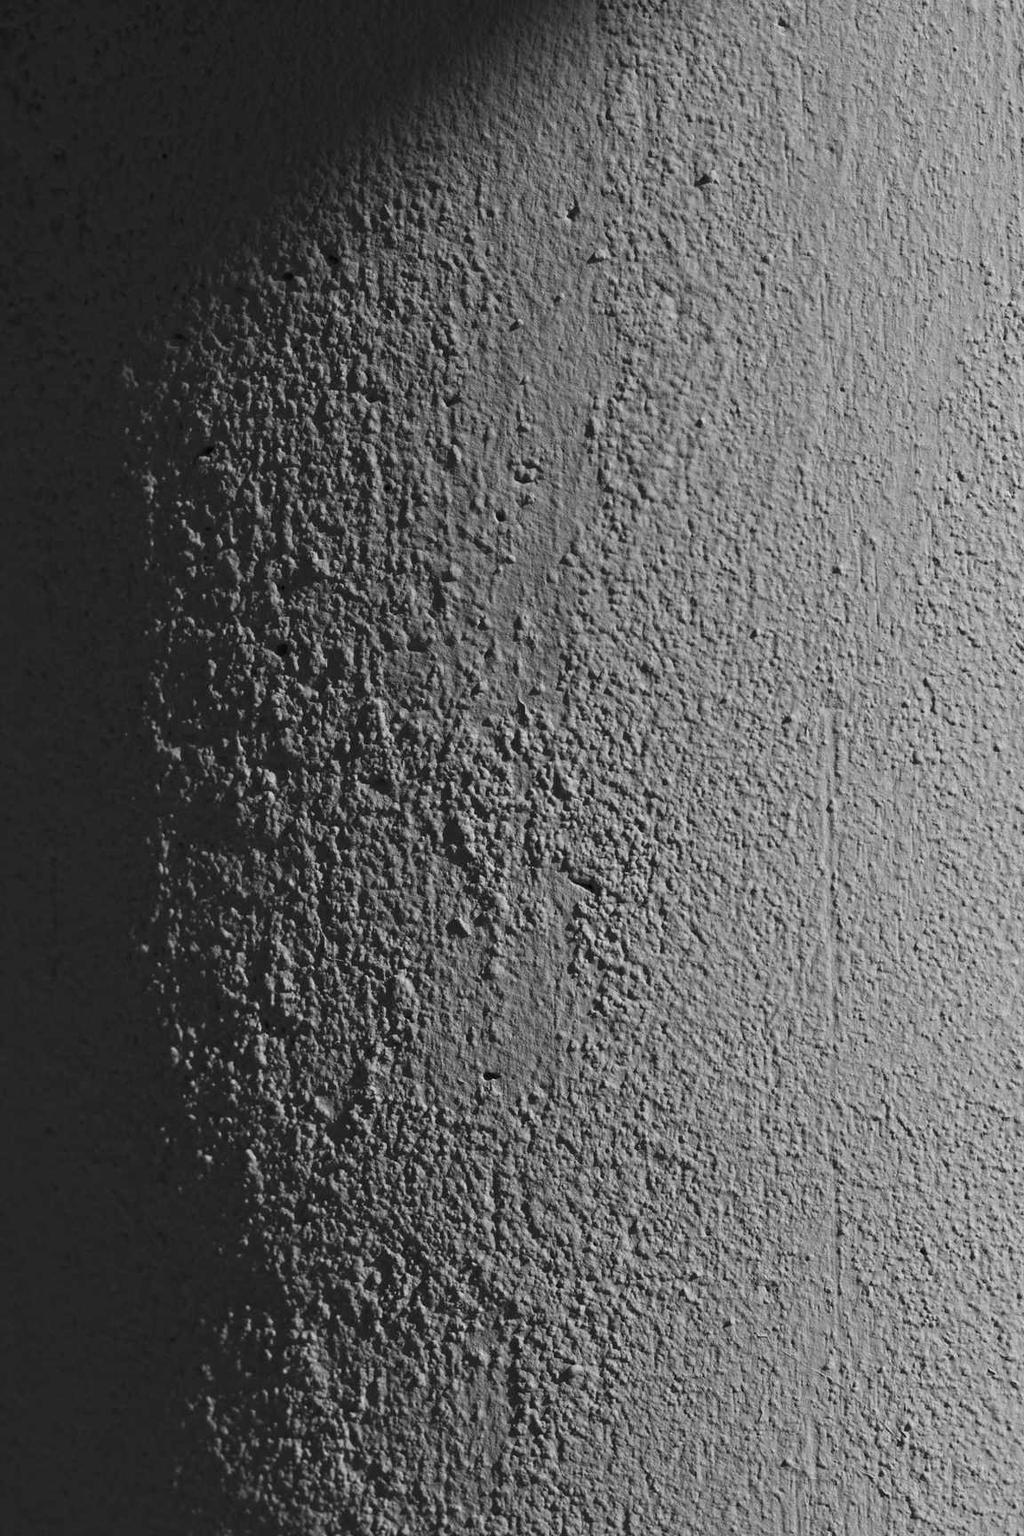 8 bittiä Kuvaus: Osa Plejadeista. Kuvattu kaukoputkeen liitetyllä CCD-kameralla.